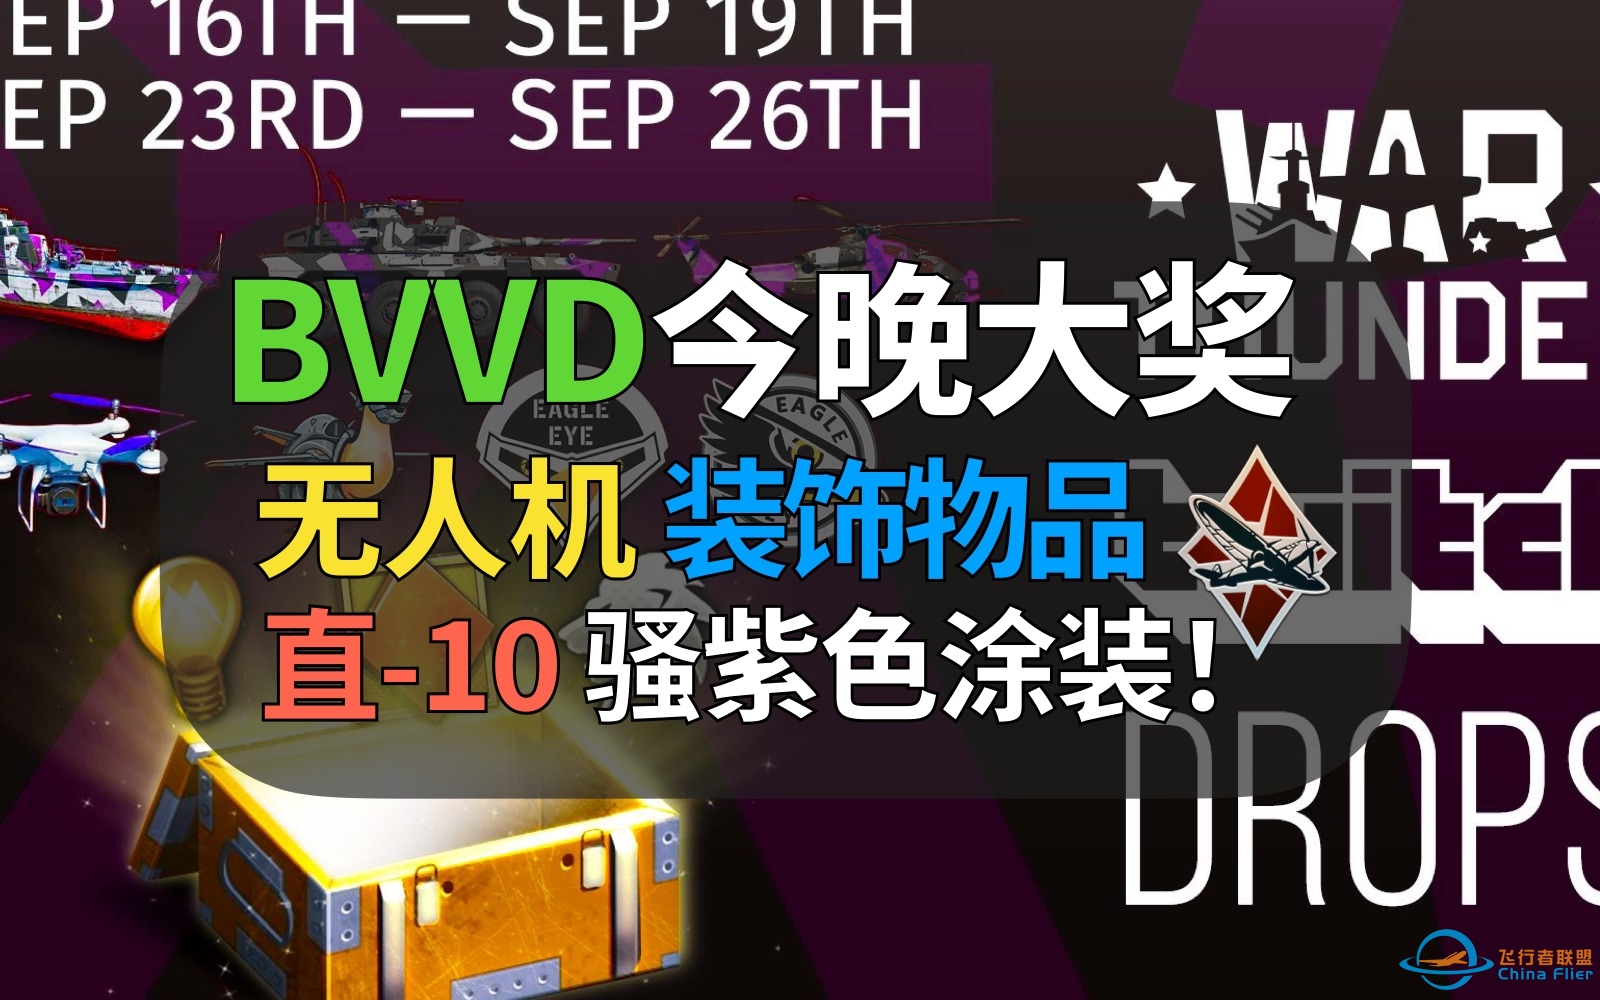 【战争雷霆】中国玩家注意！今晚白嫖BVVD免费大奖！直-10骚紫涂装与3D挂件免费入手！-4489 